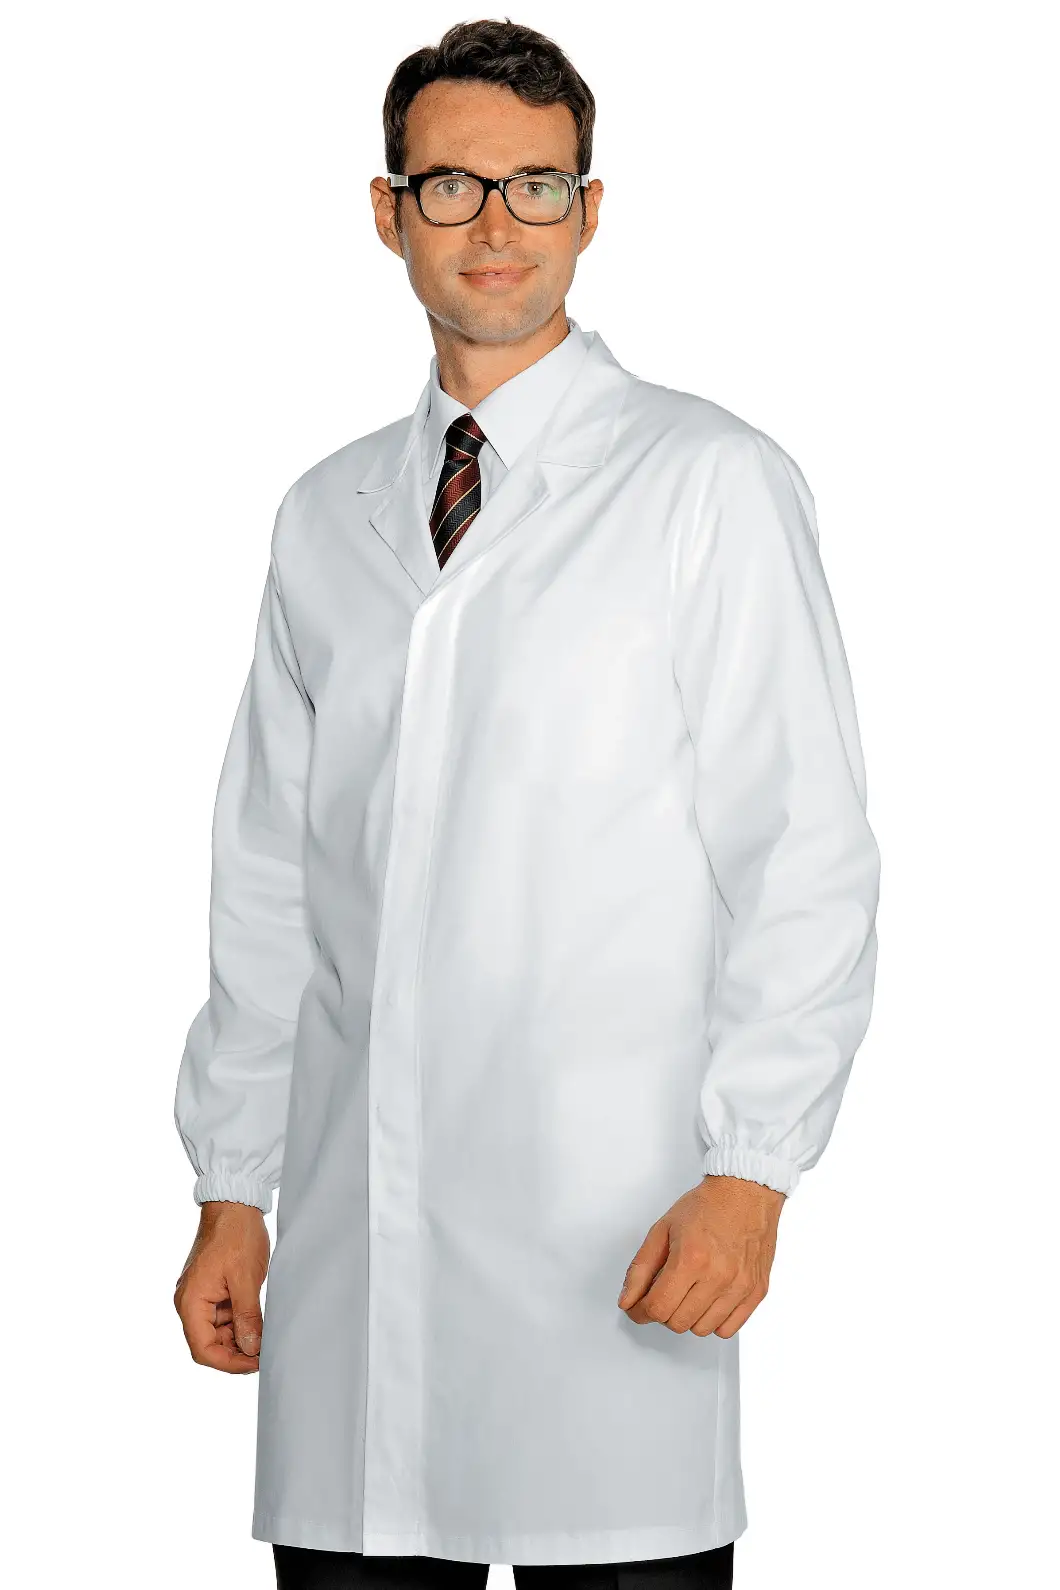 Camice da Medico, Paramedico, Veterinario Senza Tasche Esterne Personalizzato - Isacco